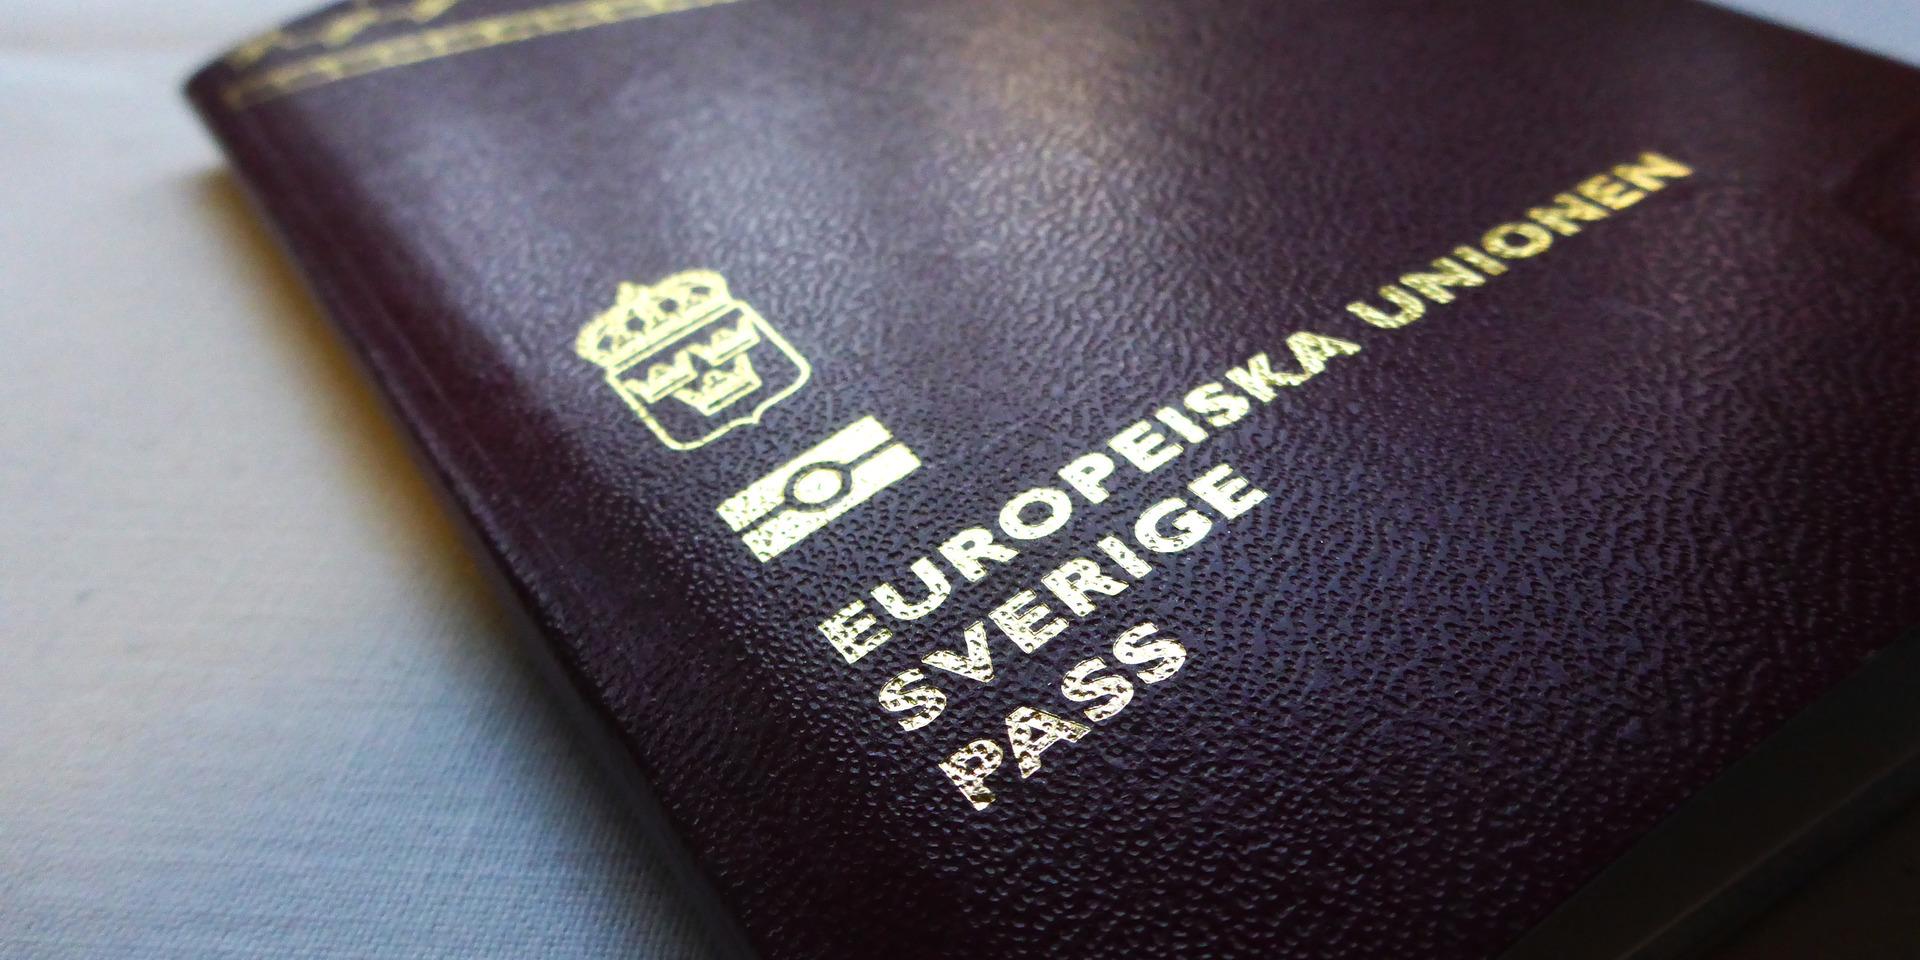 Det kan nu ta månader att få en tid för att skaffa nytt pass. Men väntetiden runtom i Västra Götaland och Halland skiljer sig mycket åt.